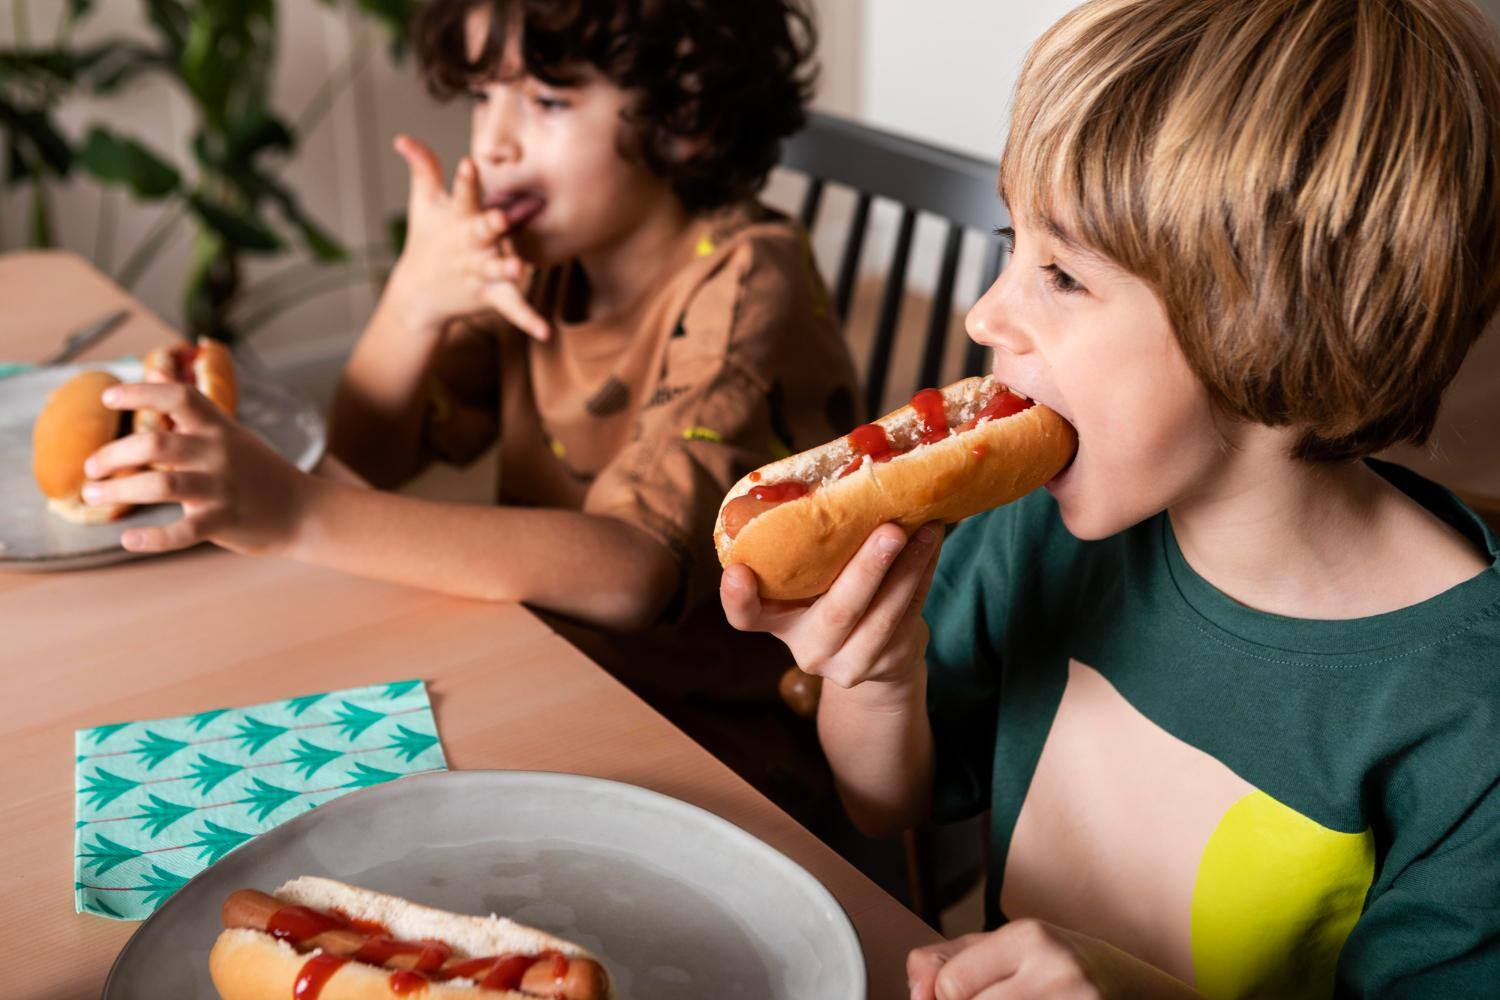 Uma alimentação não saudável provoca o aumento da obesidade infantil